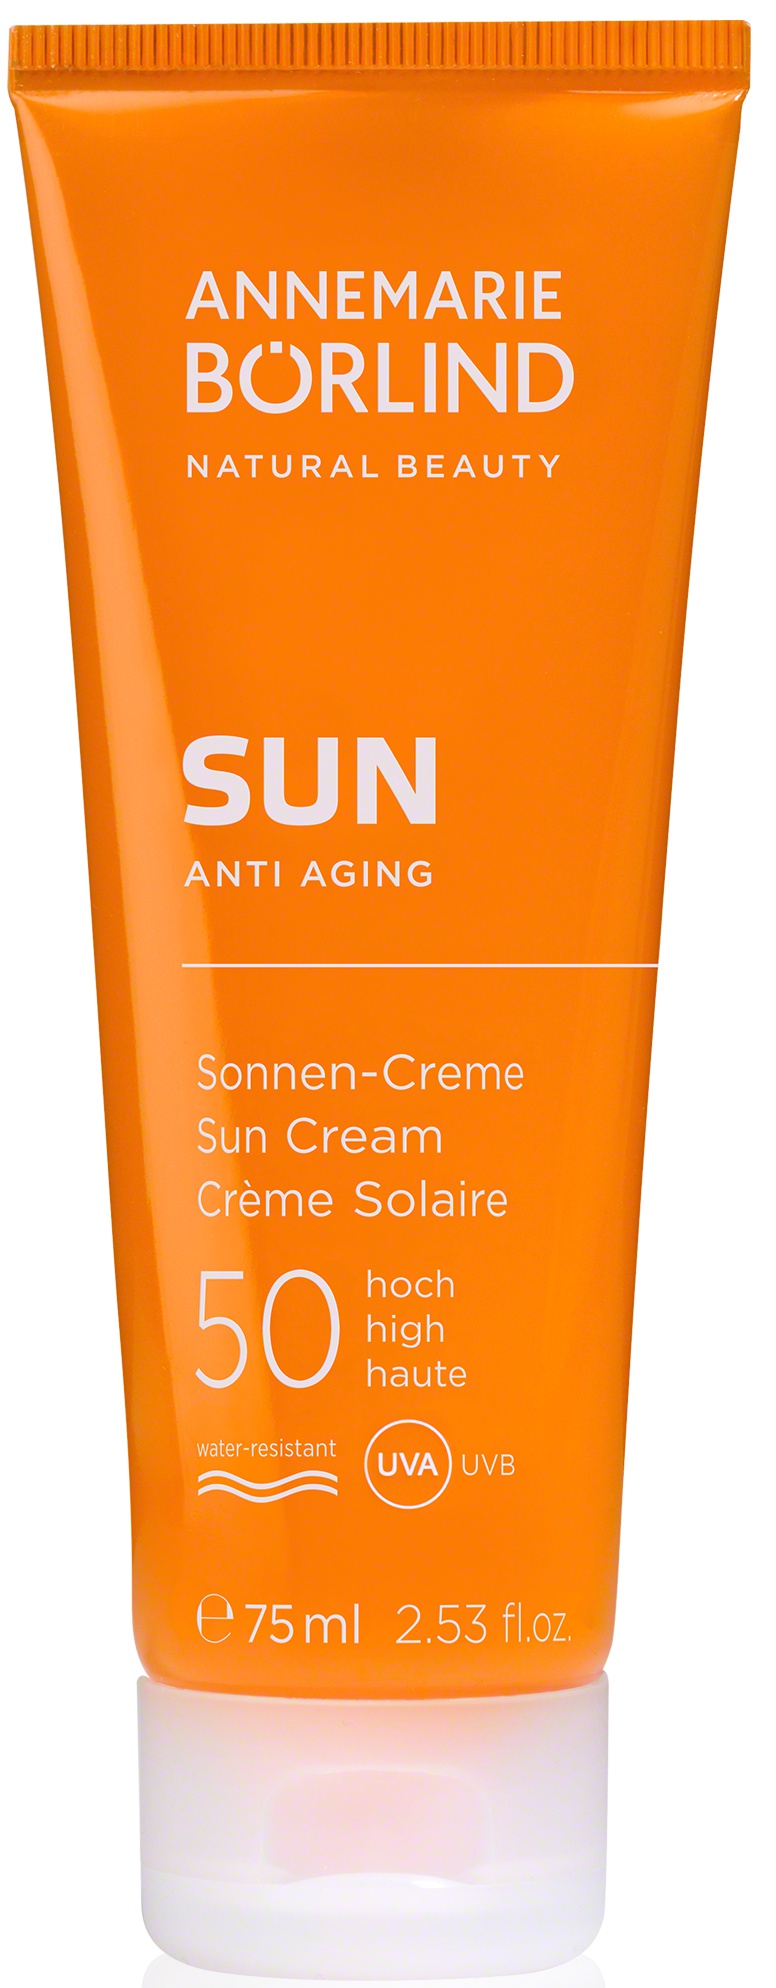 Annemarie Börlind Sun Anti Aging Sun Cream SPF 50